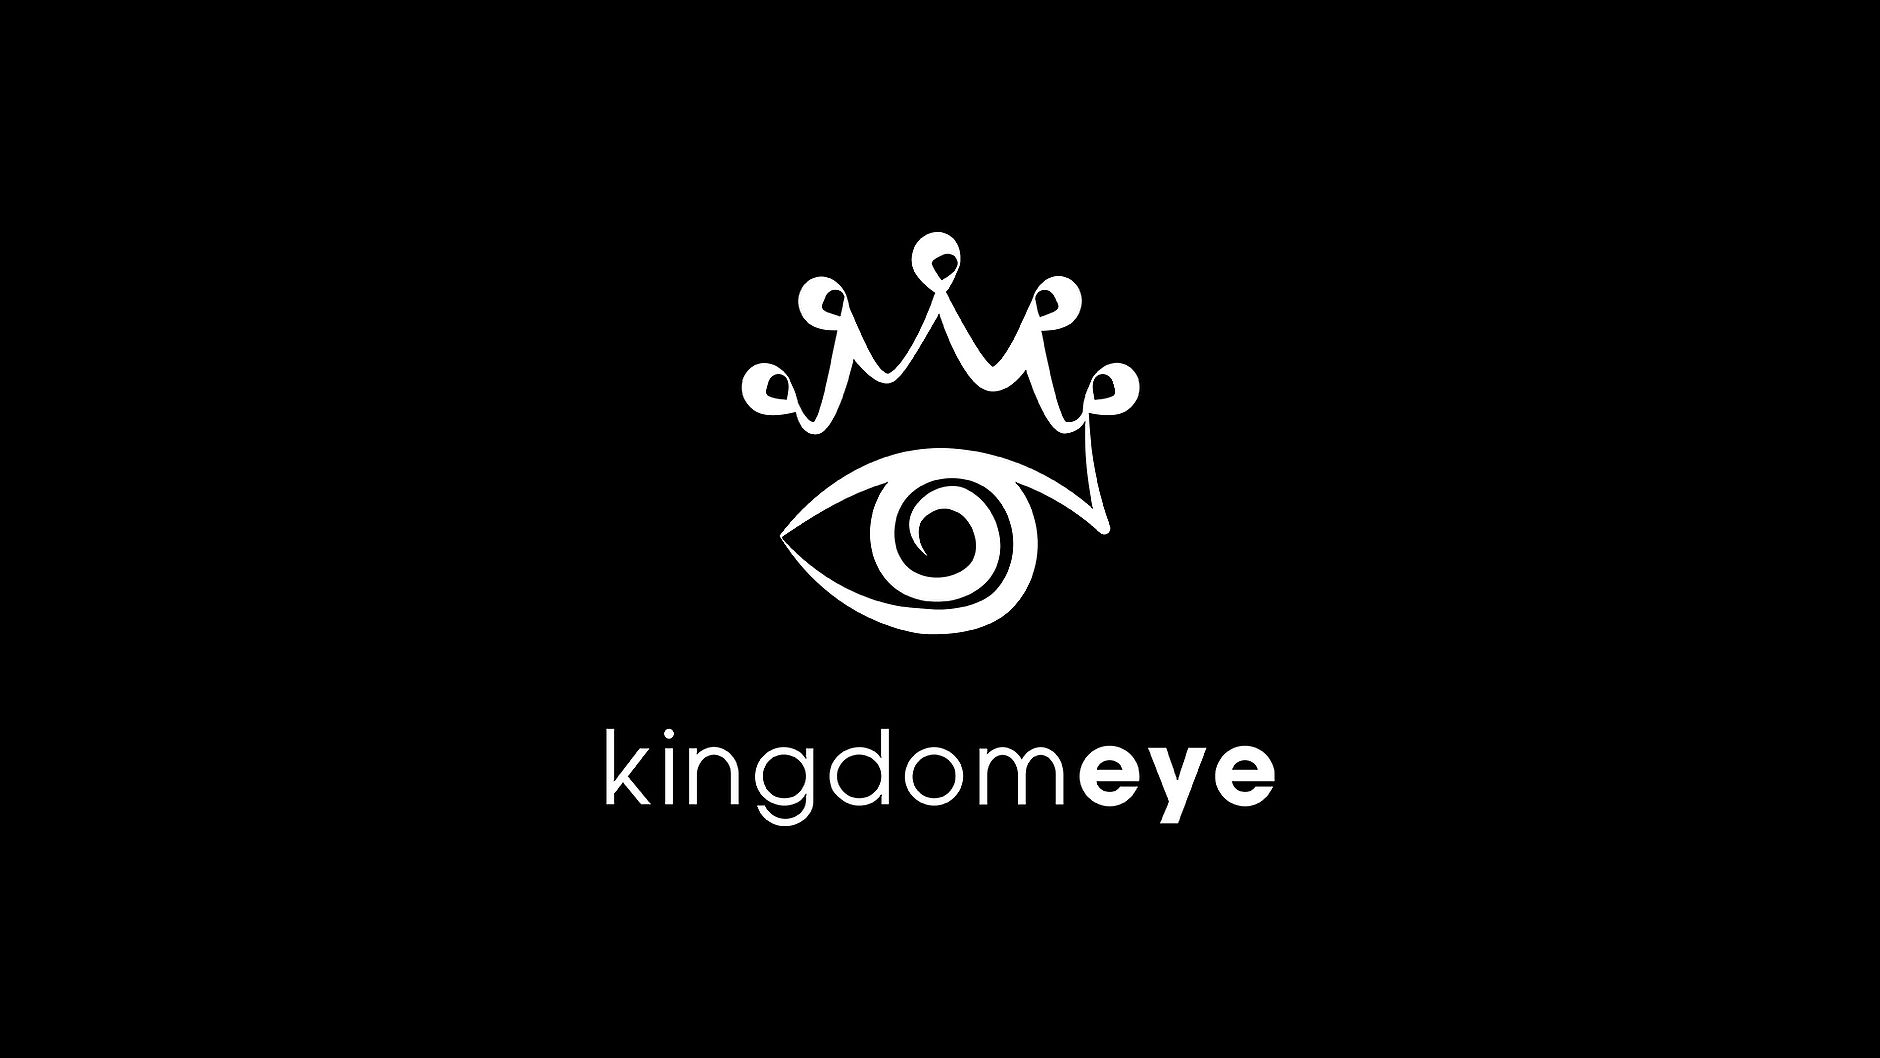 kingdom eye